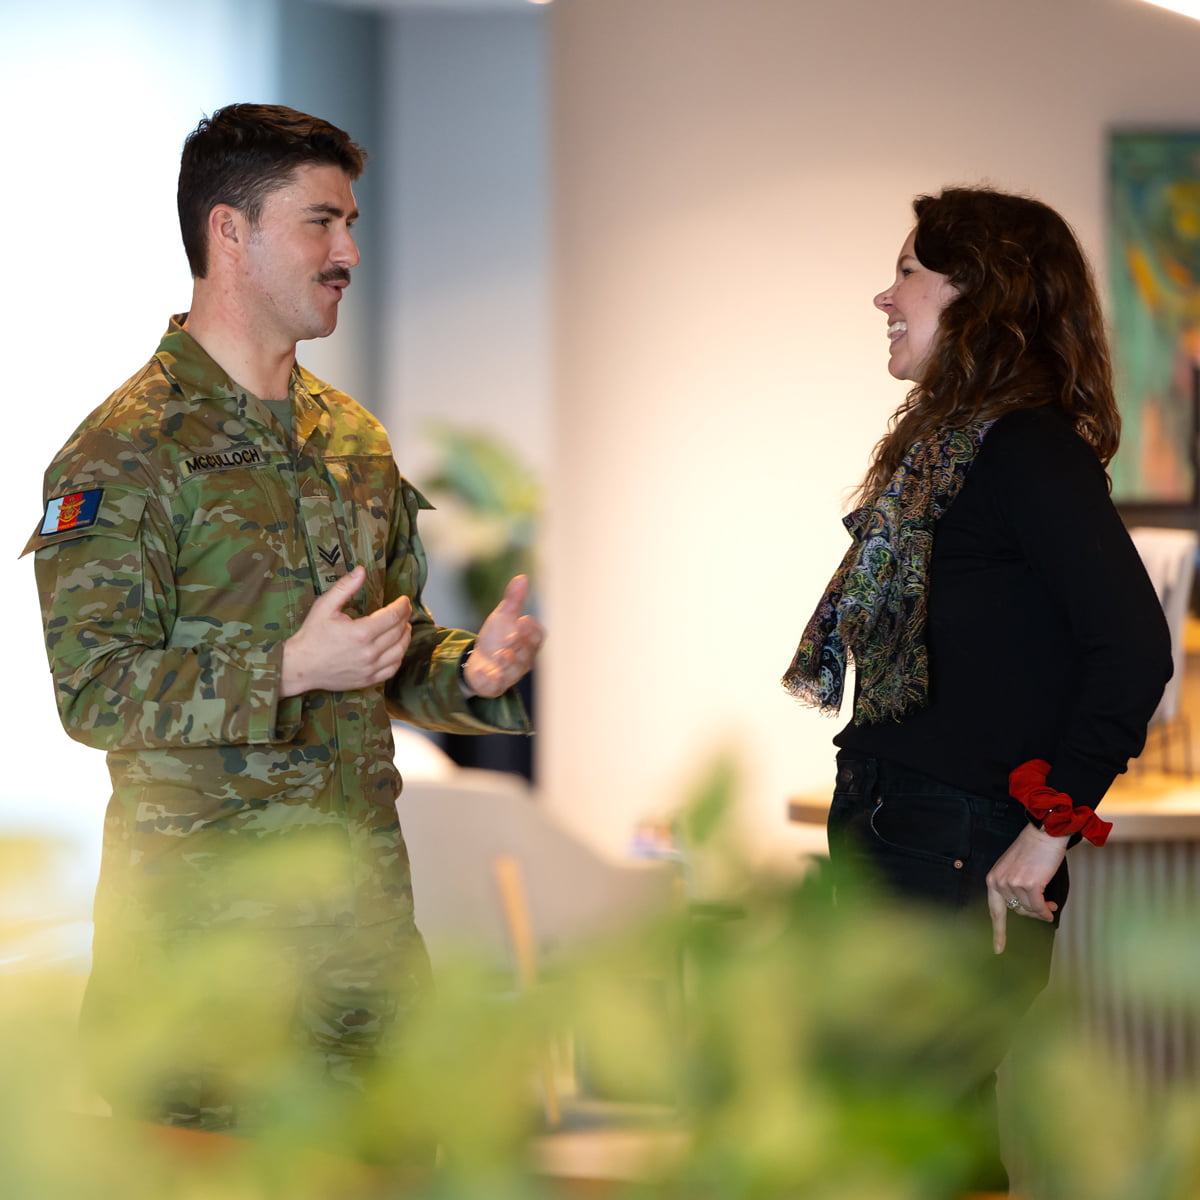 A man in uniform speaks to a woman.